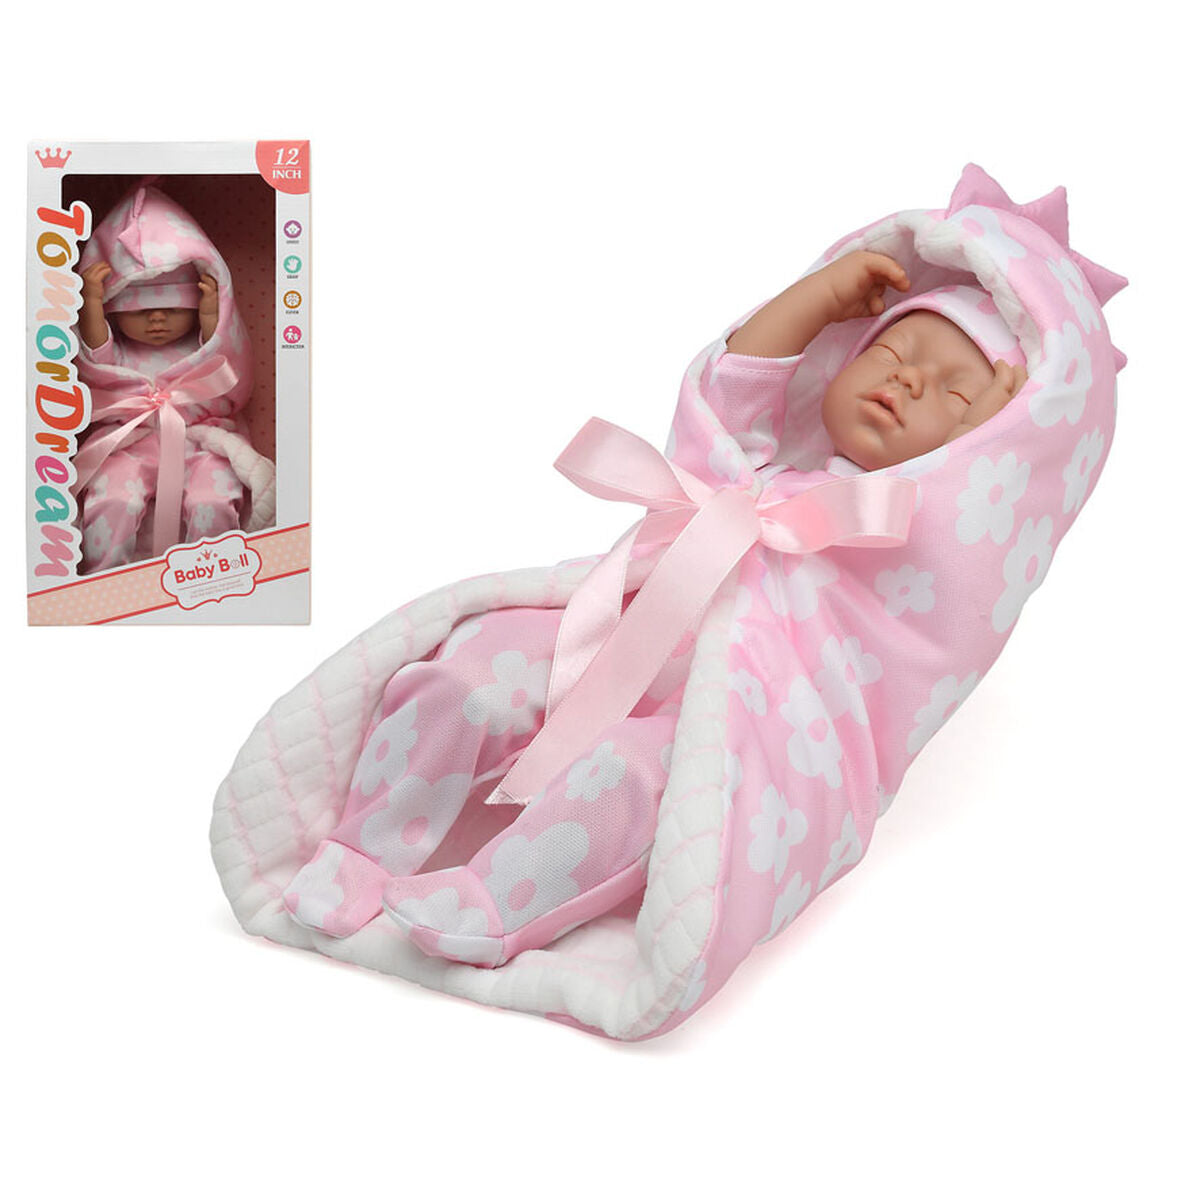 Baby doll Tomor DREAM - Disponibile in 3-4 giorni lavorativi